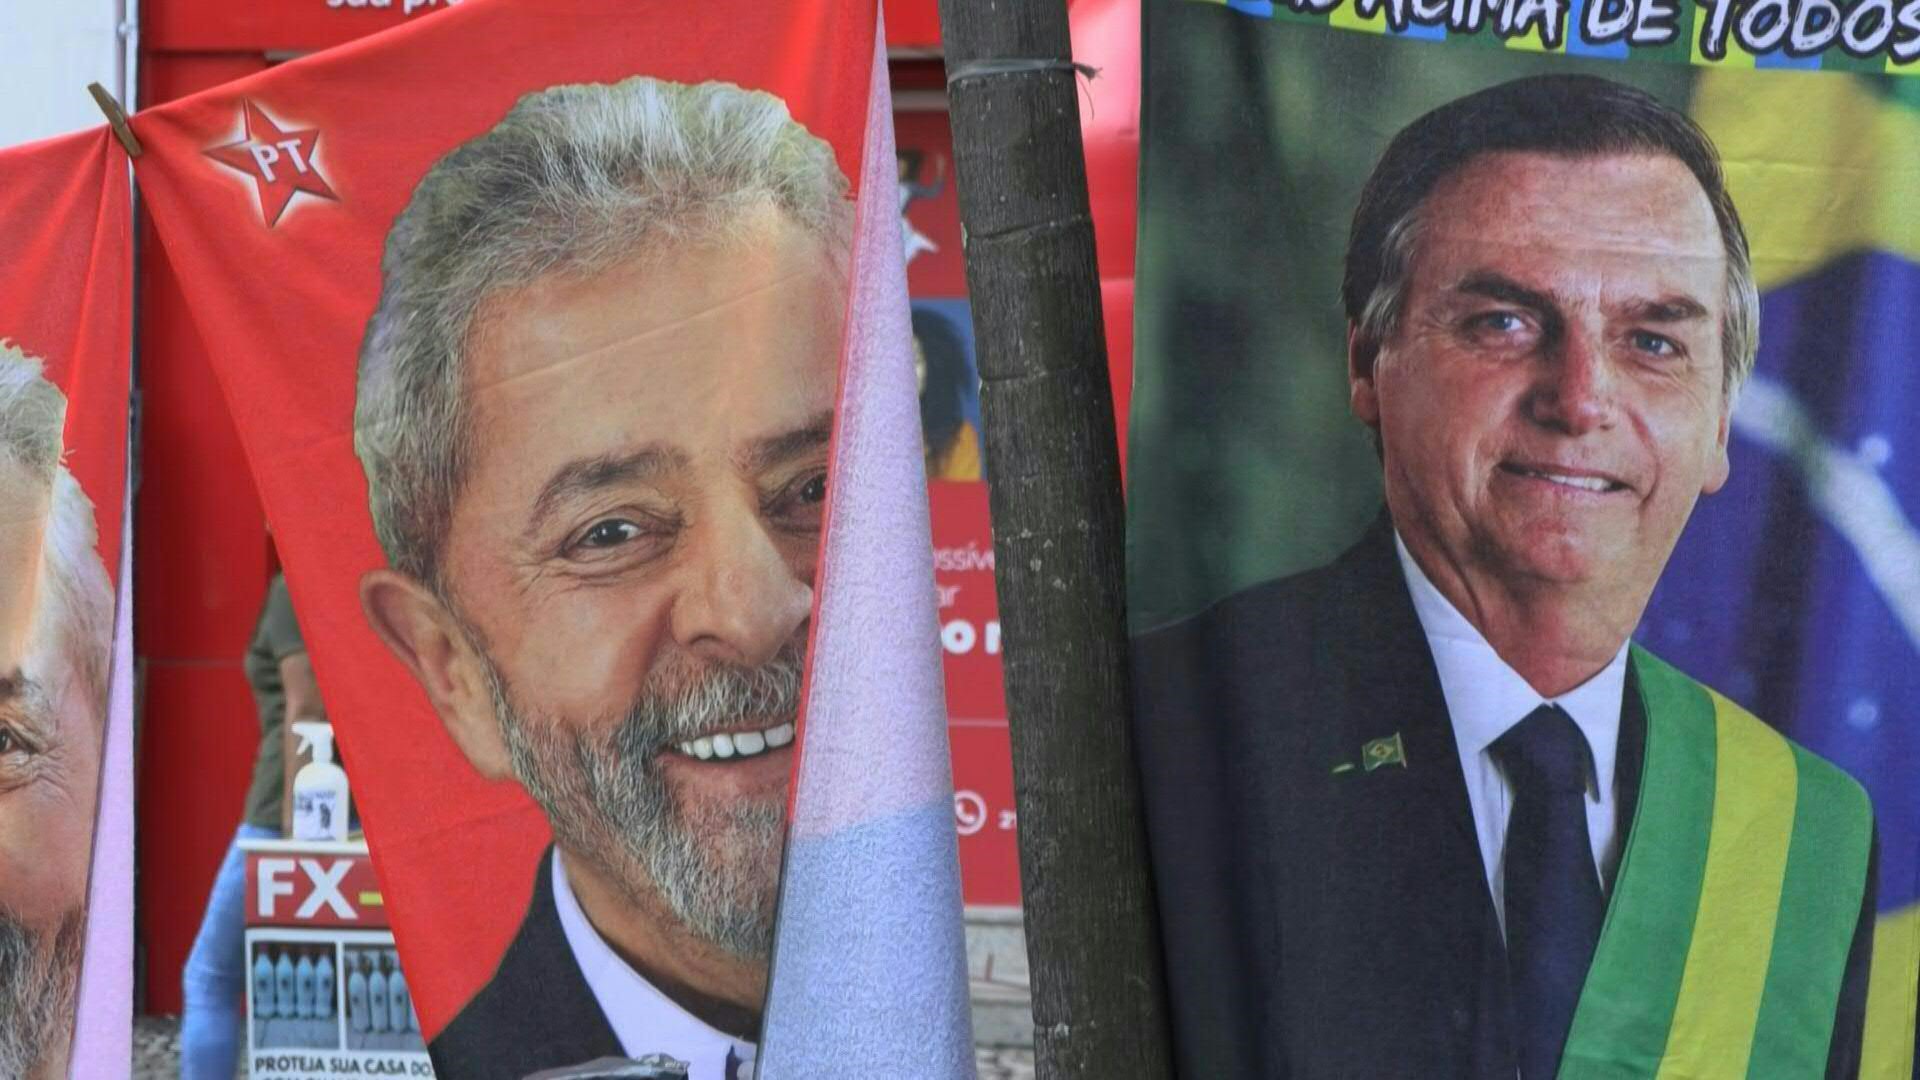 A la izquierda, una toalla estampada con la efigie del exmandatario Luiz Inácio Lula da Silva sobre un fondo rojo; a la derecha, otra con el retrato presidencial de Jair Bolsonaro escoltado por la bandera de Brasil.